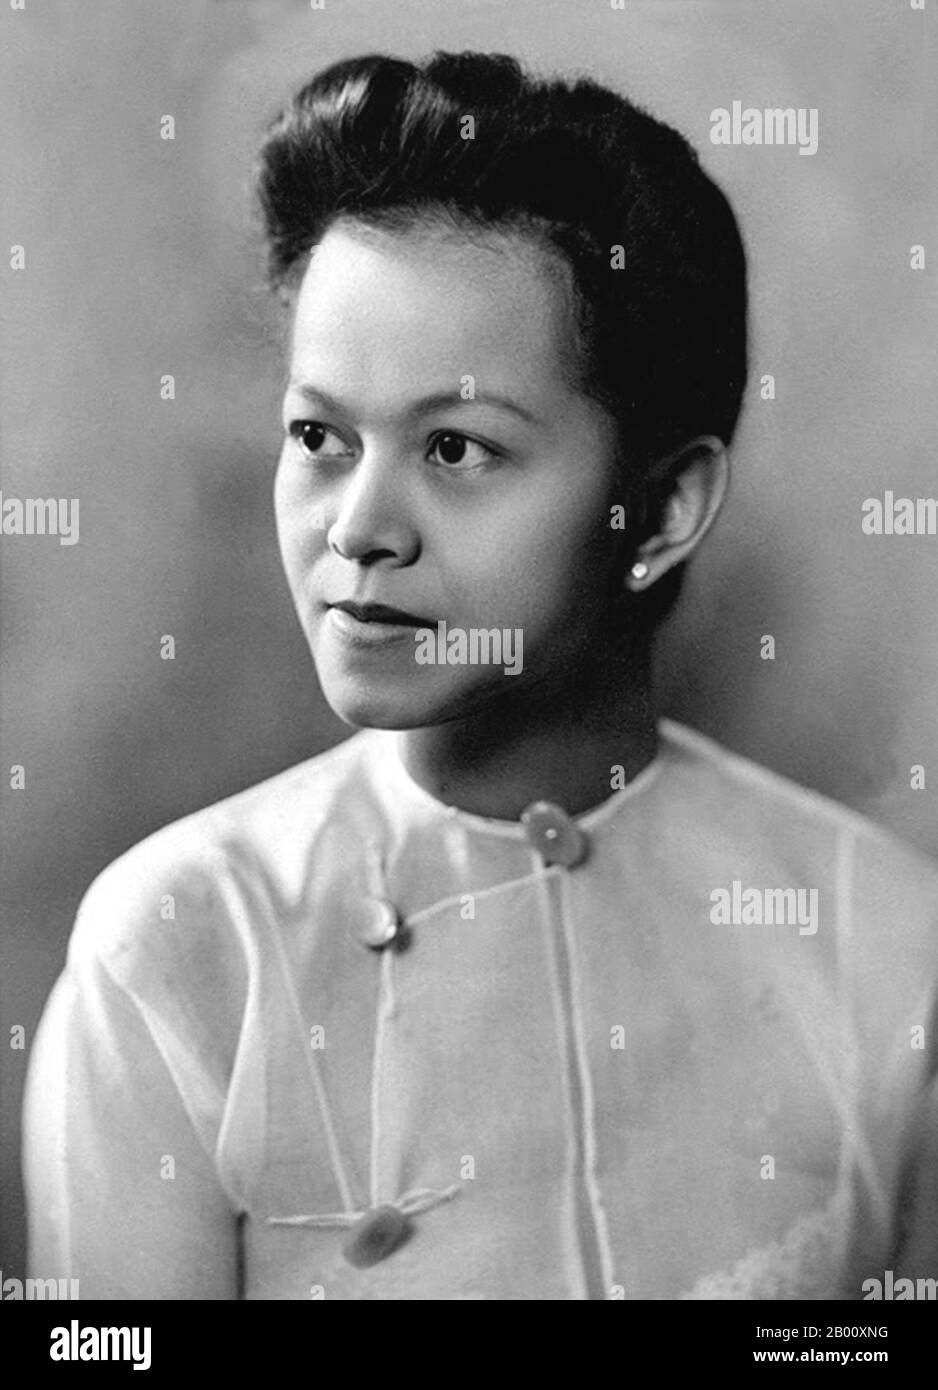 Birma/Myanmar: DAW Mi Mi Khaing (1916-1990), Autorin, Feministin und Pädagogin, c.. 1950. Mi Mi Mi Khaing (1916. – 15. März 1990) war ein birmanischer Gelehrter und Schriftsteller, der zahlreiche Bücher und Artikel über das Leben in Burma im 20. Jahrhundert verfasste. Sie ist als eine der ersten Frauen bekannt, die in englischer Sprache über burmesische Kultur und Traditionen schreiben. Mi Mi Mi Khaing, geboren aus der Mon-Abstammung, wuchs während der britischen Kolonialherrschaft in Burma auf und wurde an britischen Schulen ausgebildet. Sie heiratete Sao Saimong, einen bekannten Gelehrten und Mitglied der königlichen Familie von Kengtung im Staat Shan. Stockfoto